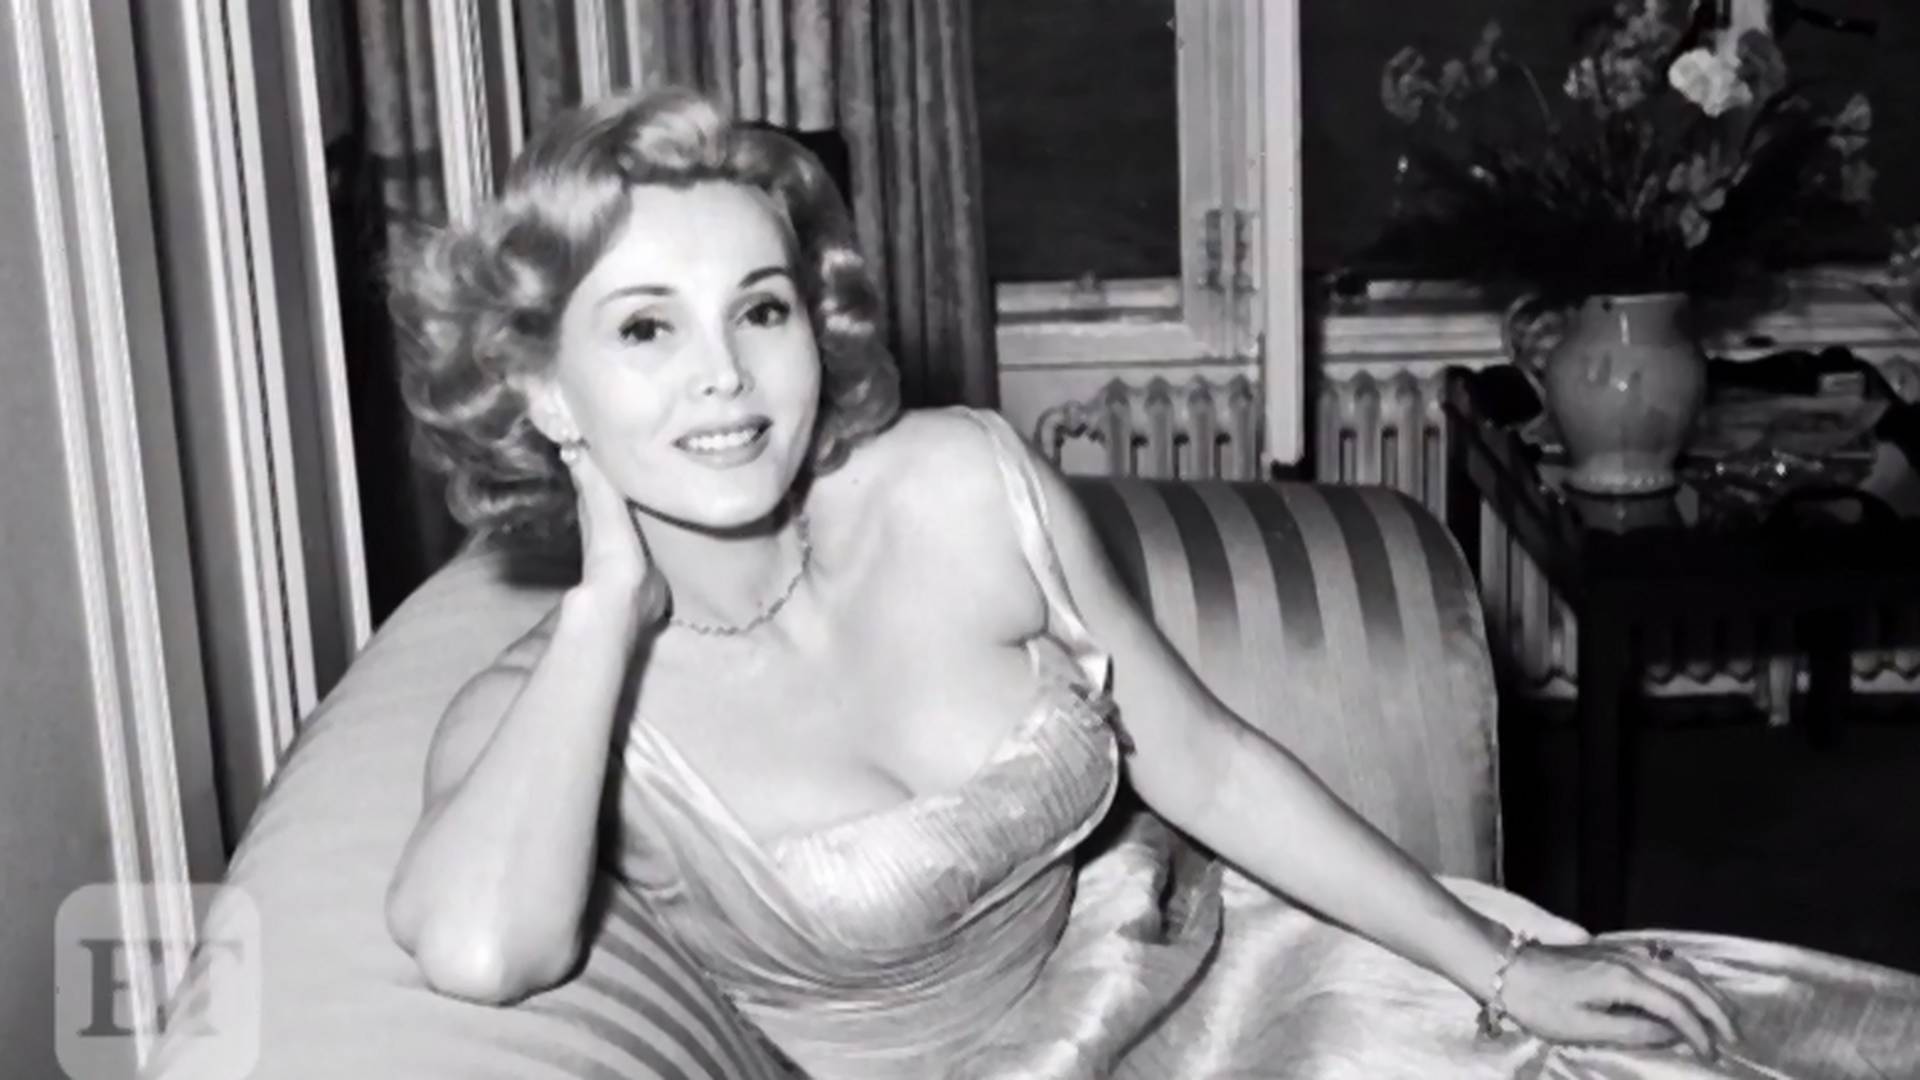 Zsa Zsa Gabor, uważana za pierwszą celebrytkę, zmarła w wieku 99 lat